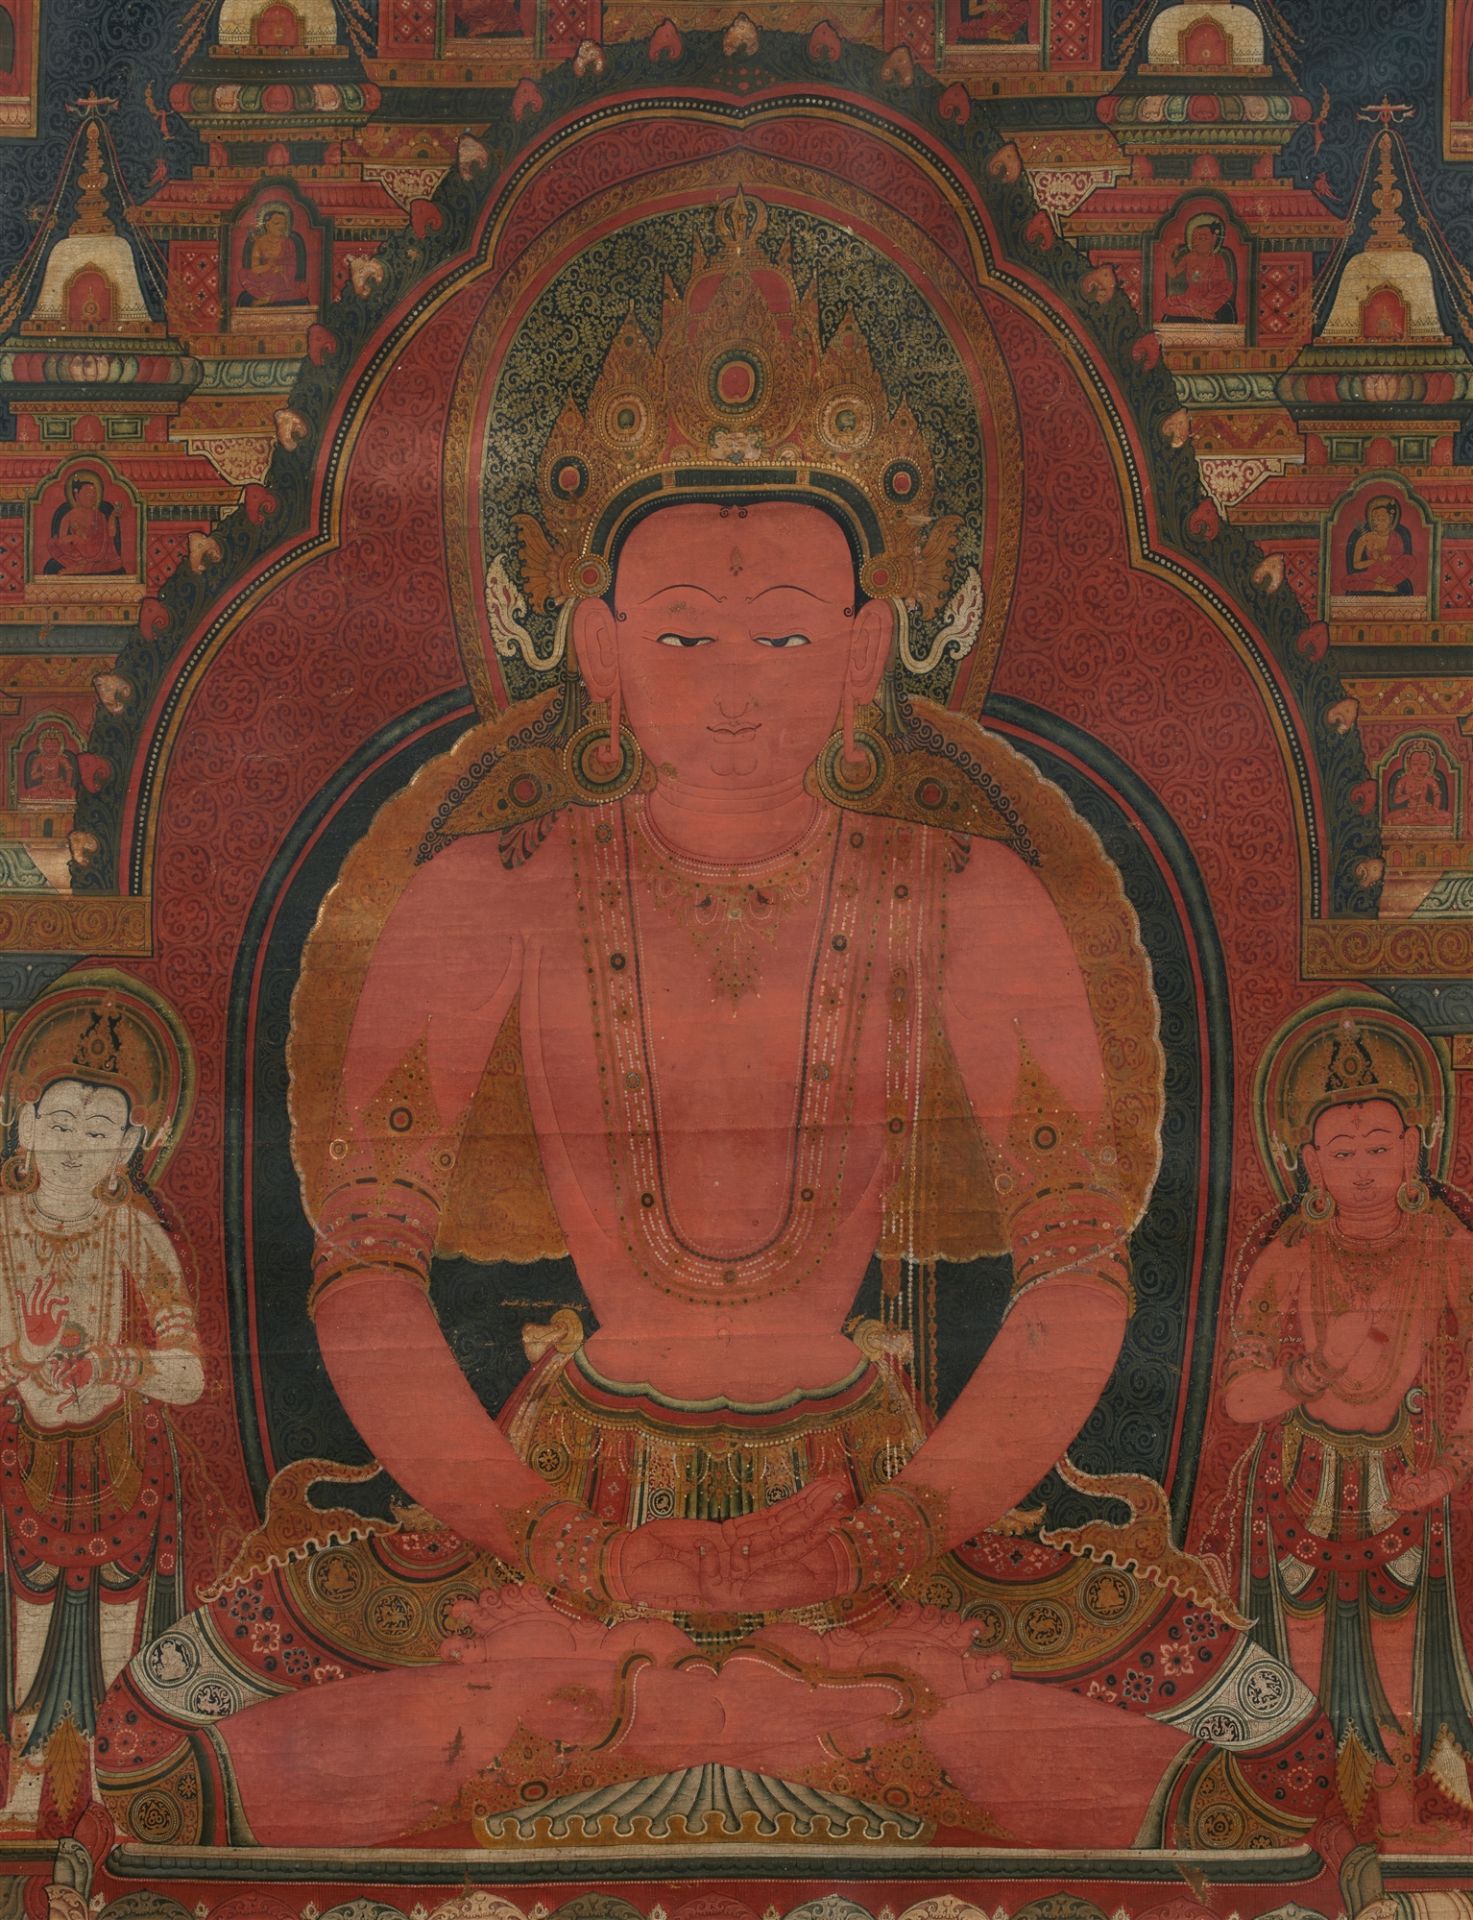 Imposantes und feines Thangka des Buddha Amitabha. Tibet, 16. Jh. oder früher - Bild 2 aus 2